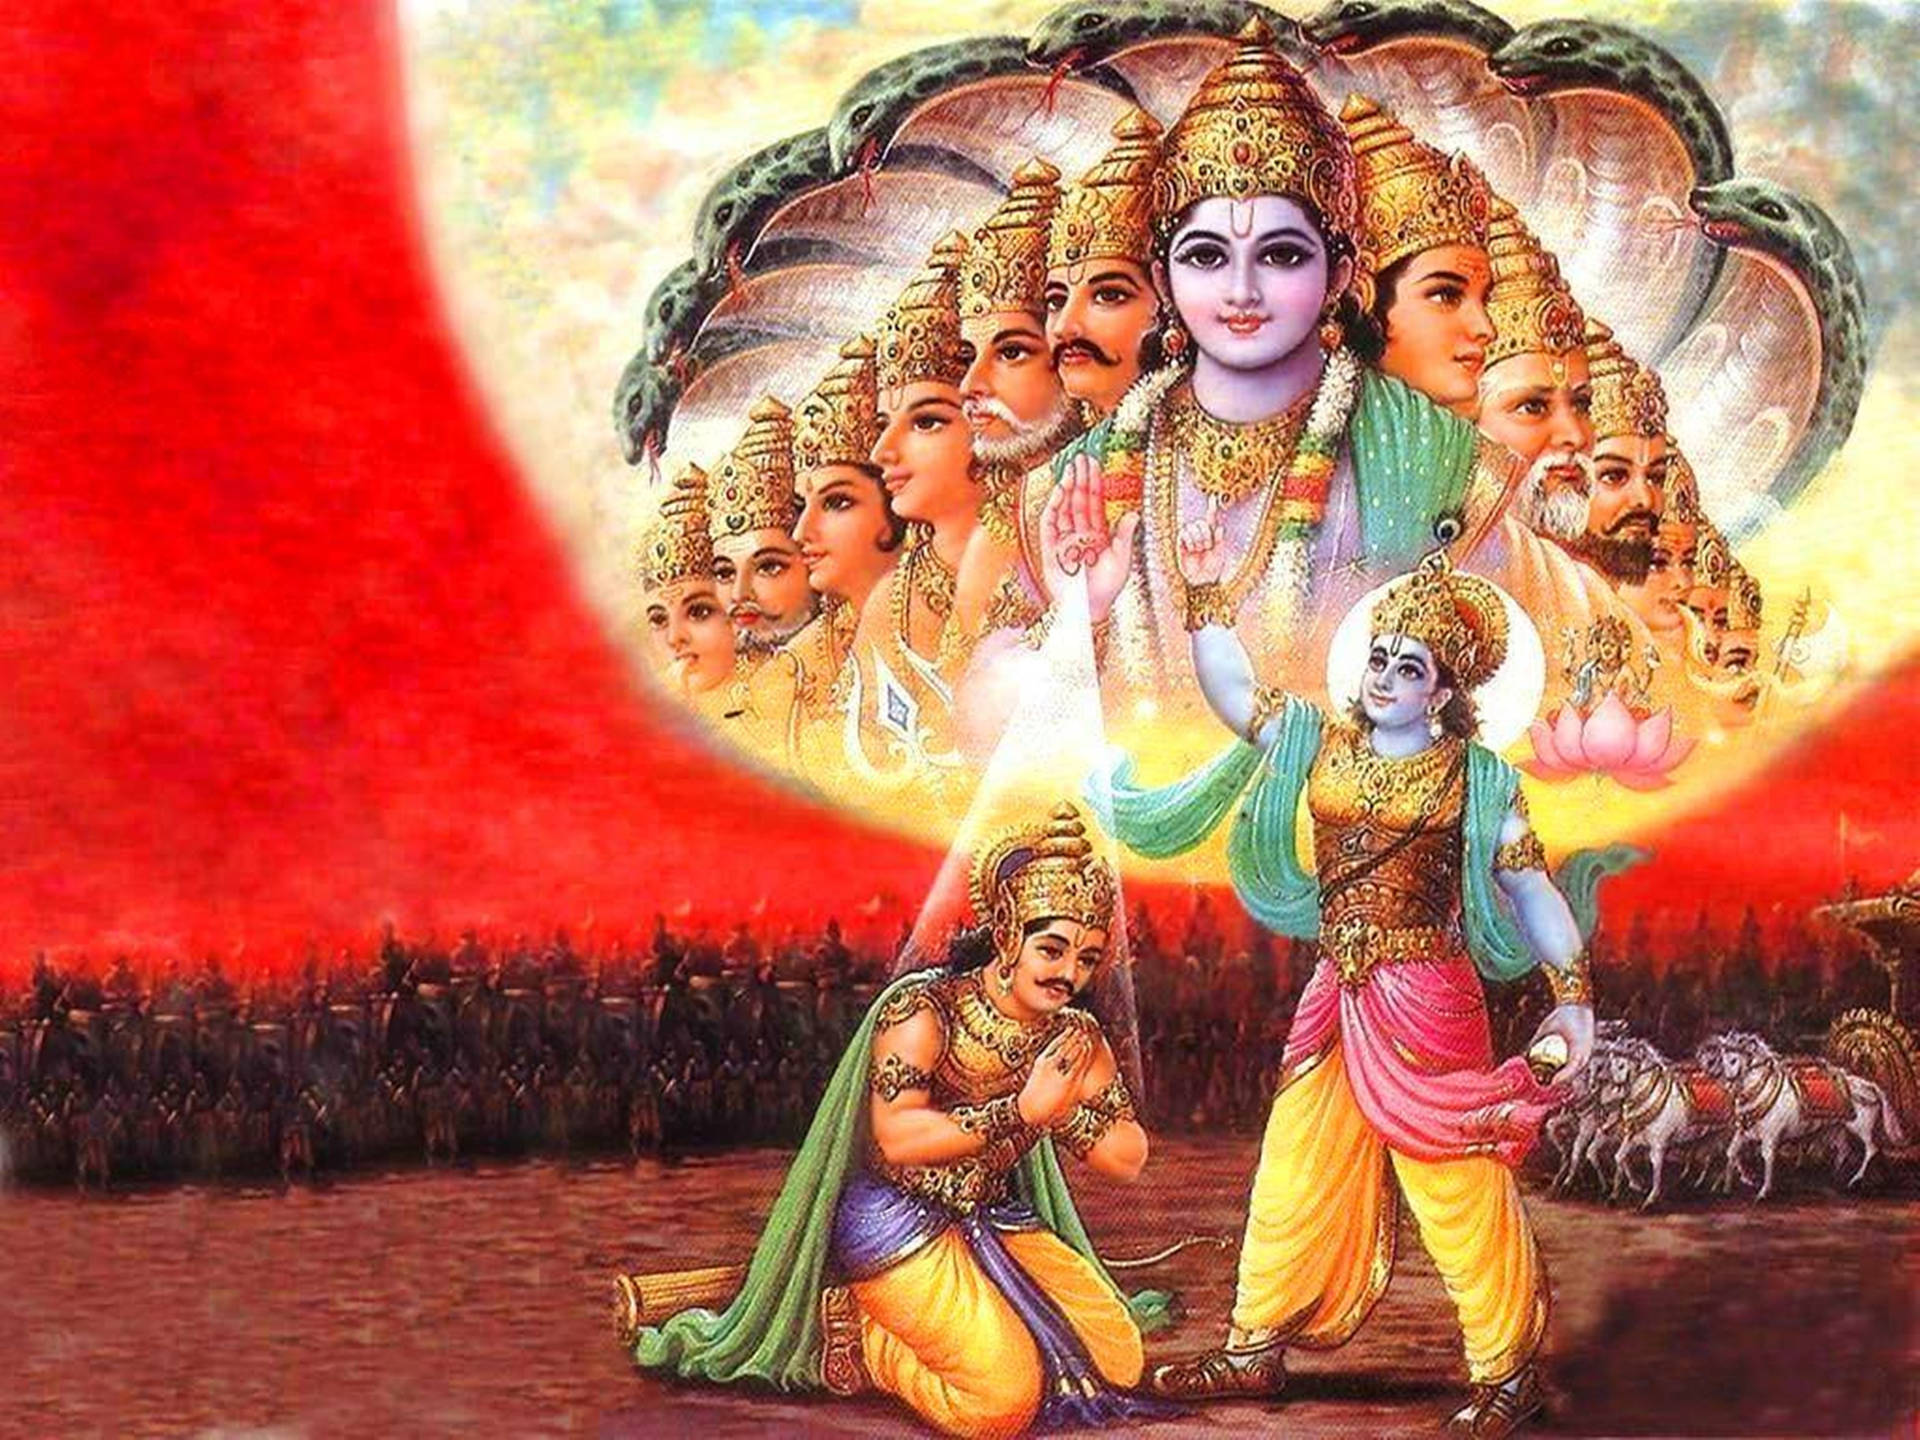 Herre Krishna 4K og Arjuna Mahabharata krigsscenet tapet. Wallpaper